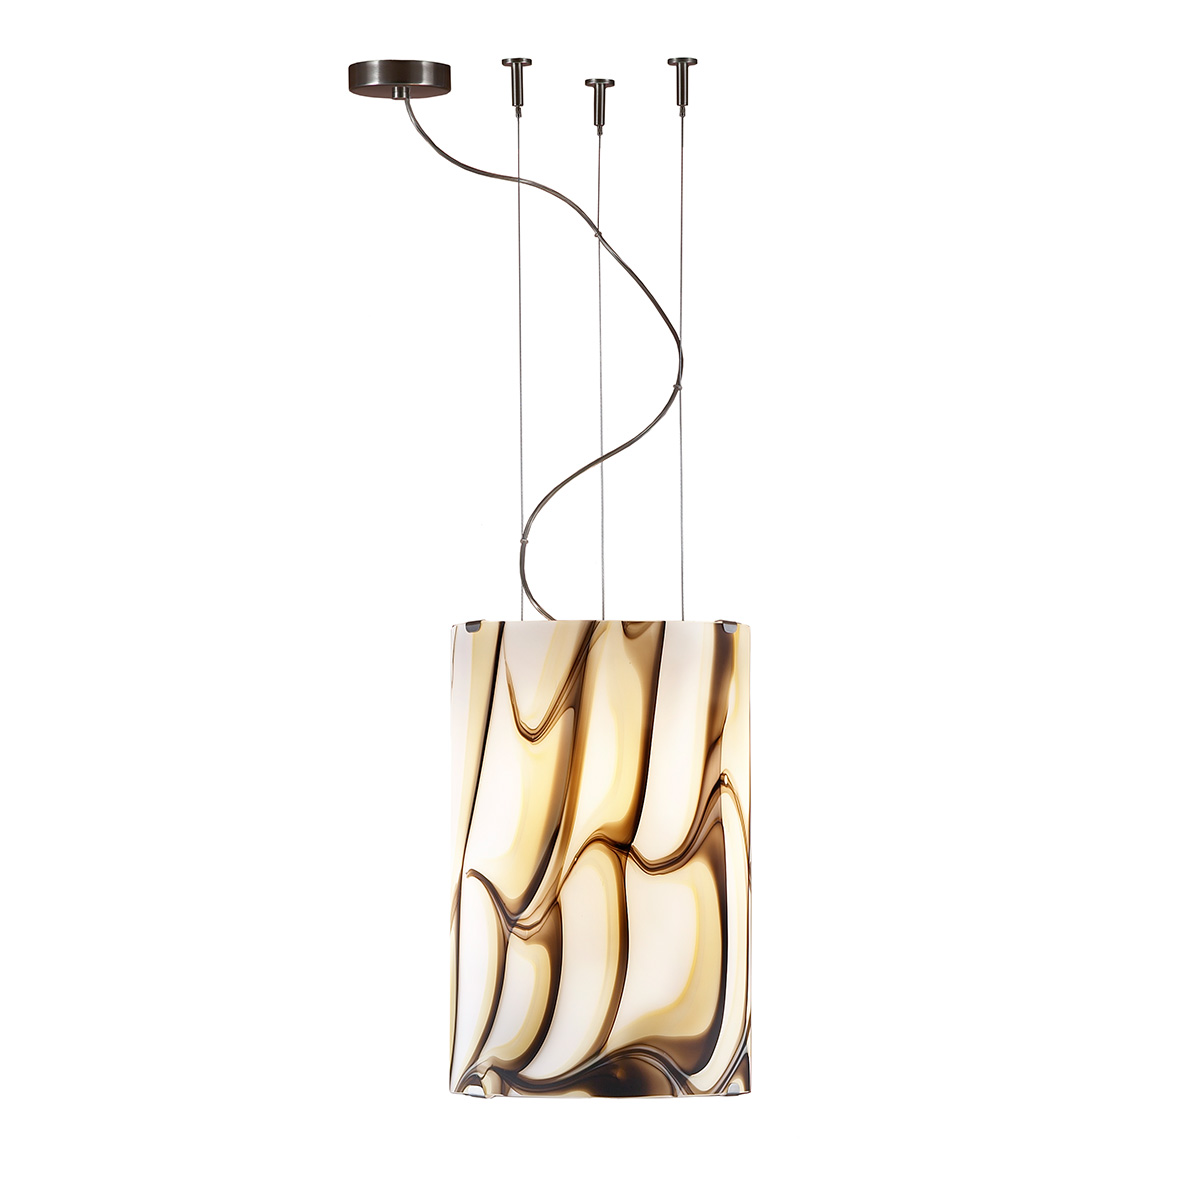 Μοντέρνο κρεμαστό φωτιστικό Μουράνο COLORE modern Murano suspension lamp